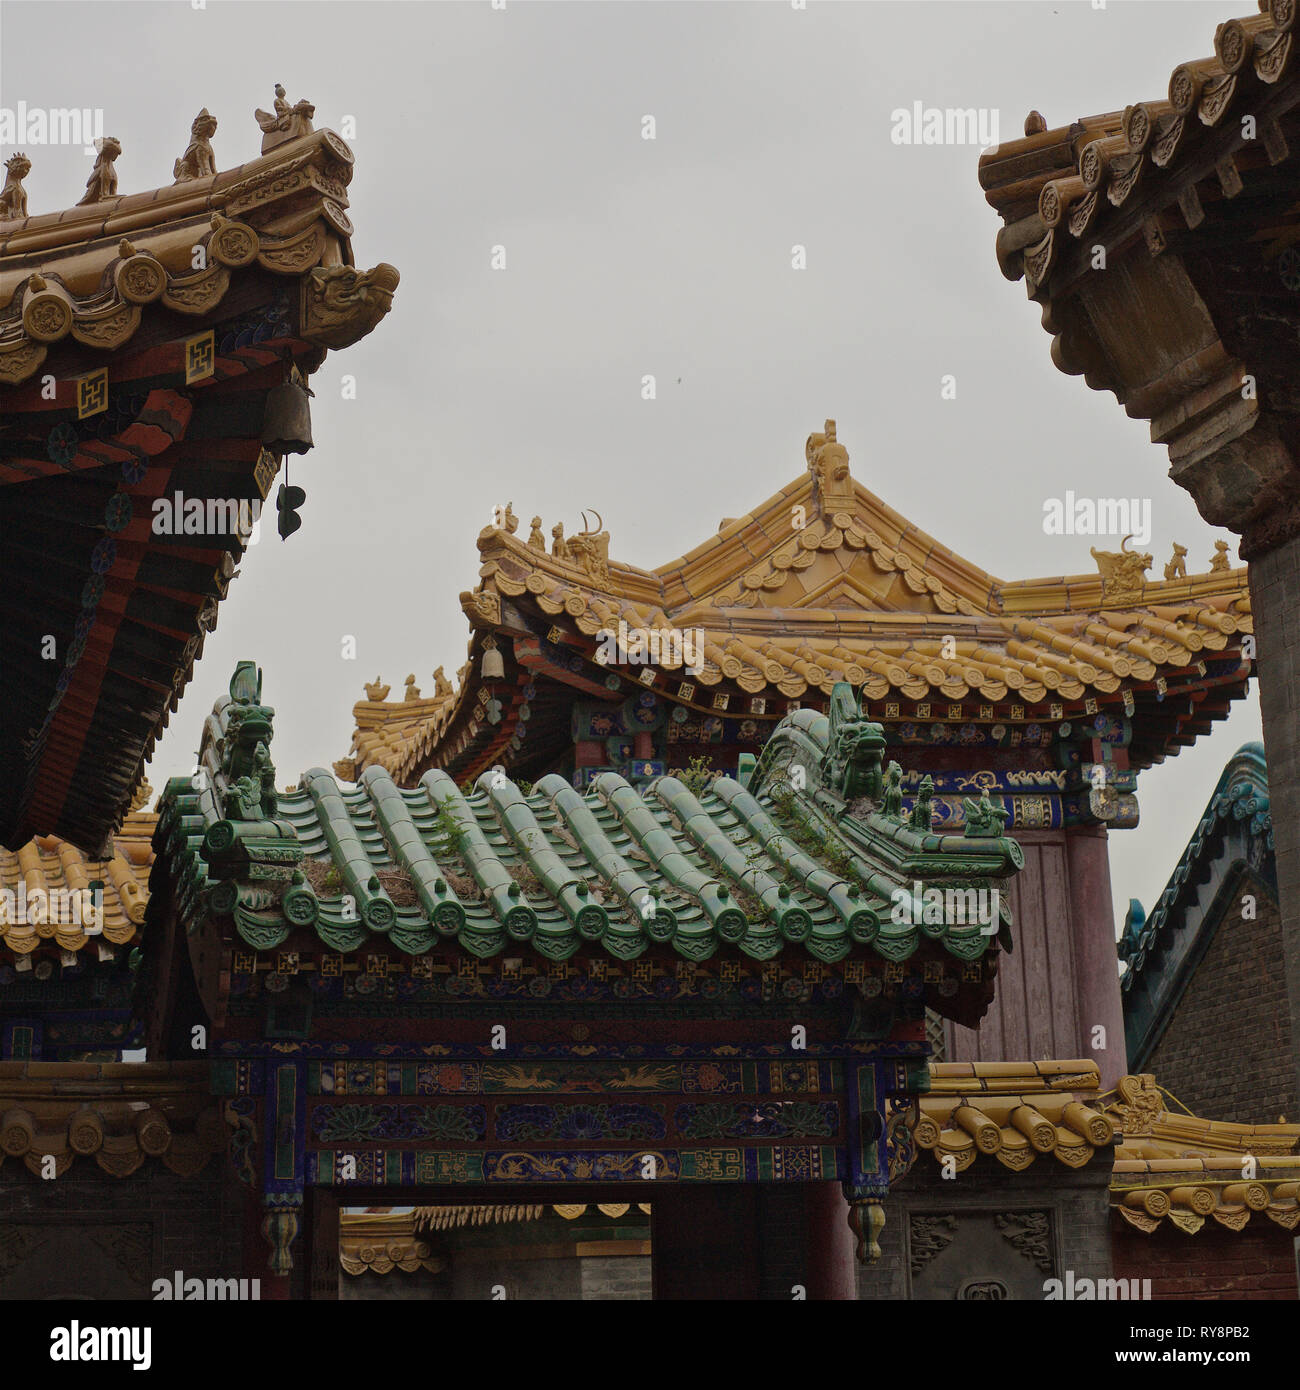 Chinese temple roof, Wutai Shan, Shanxi, China Stock Photo